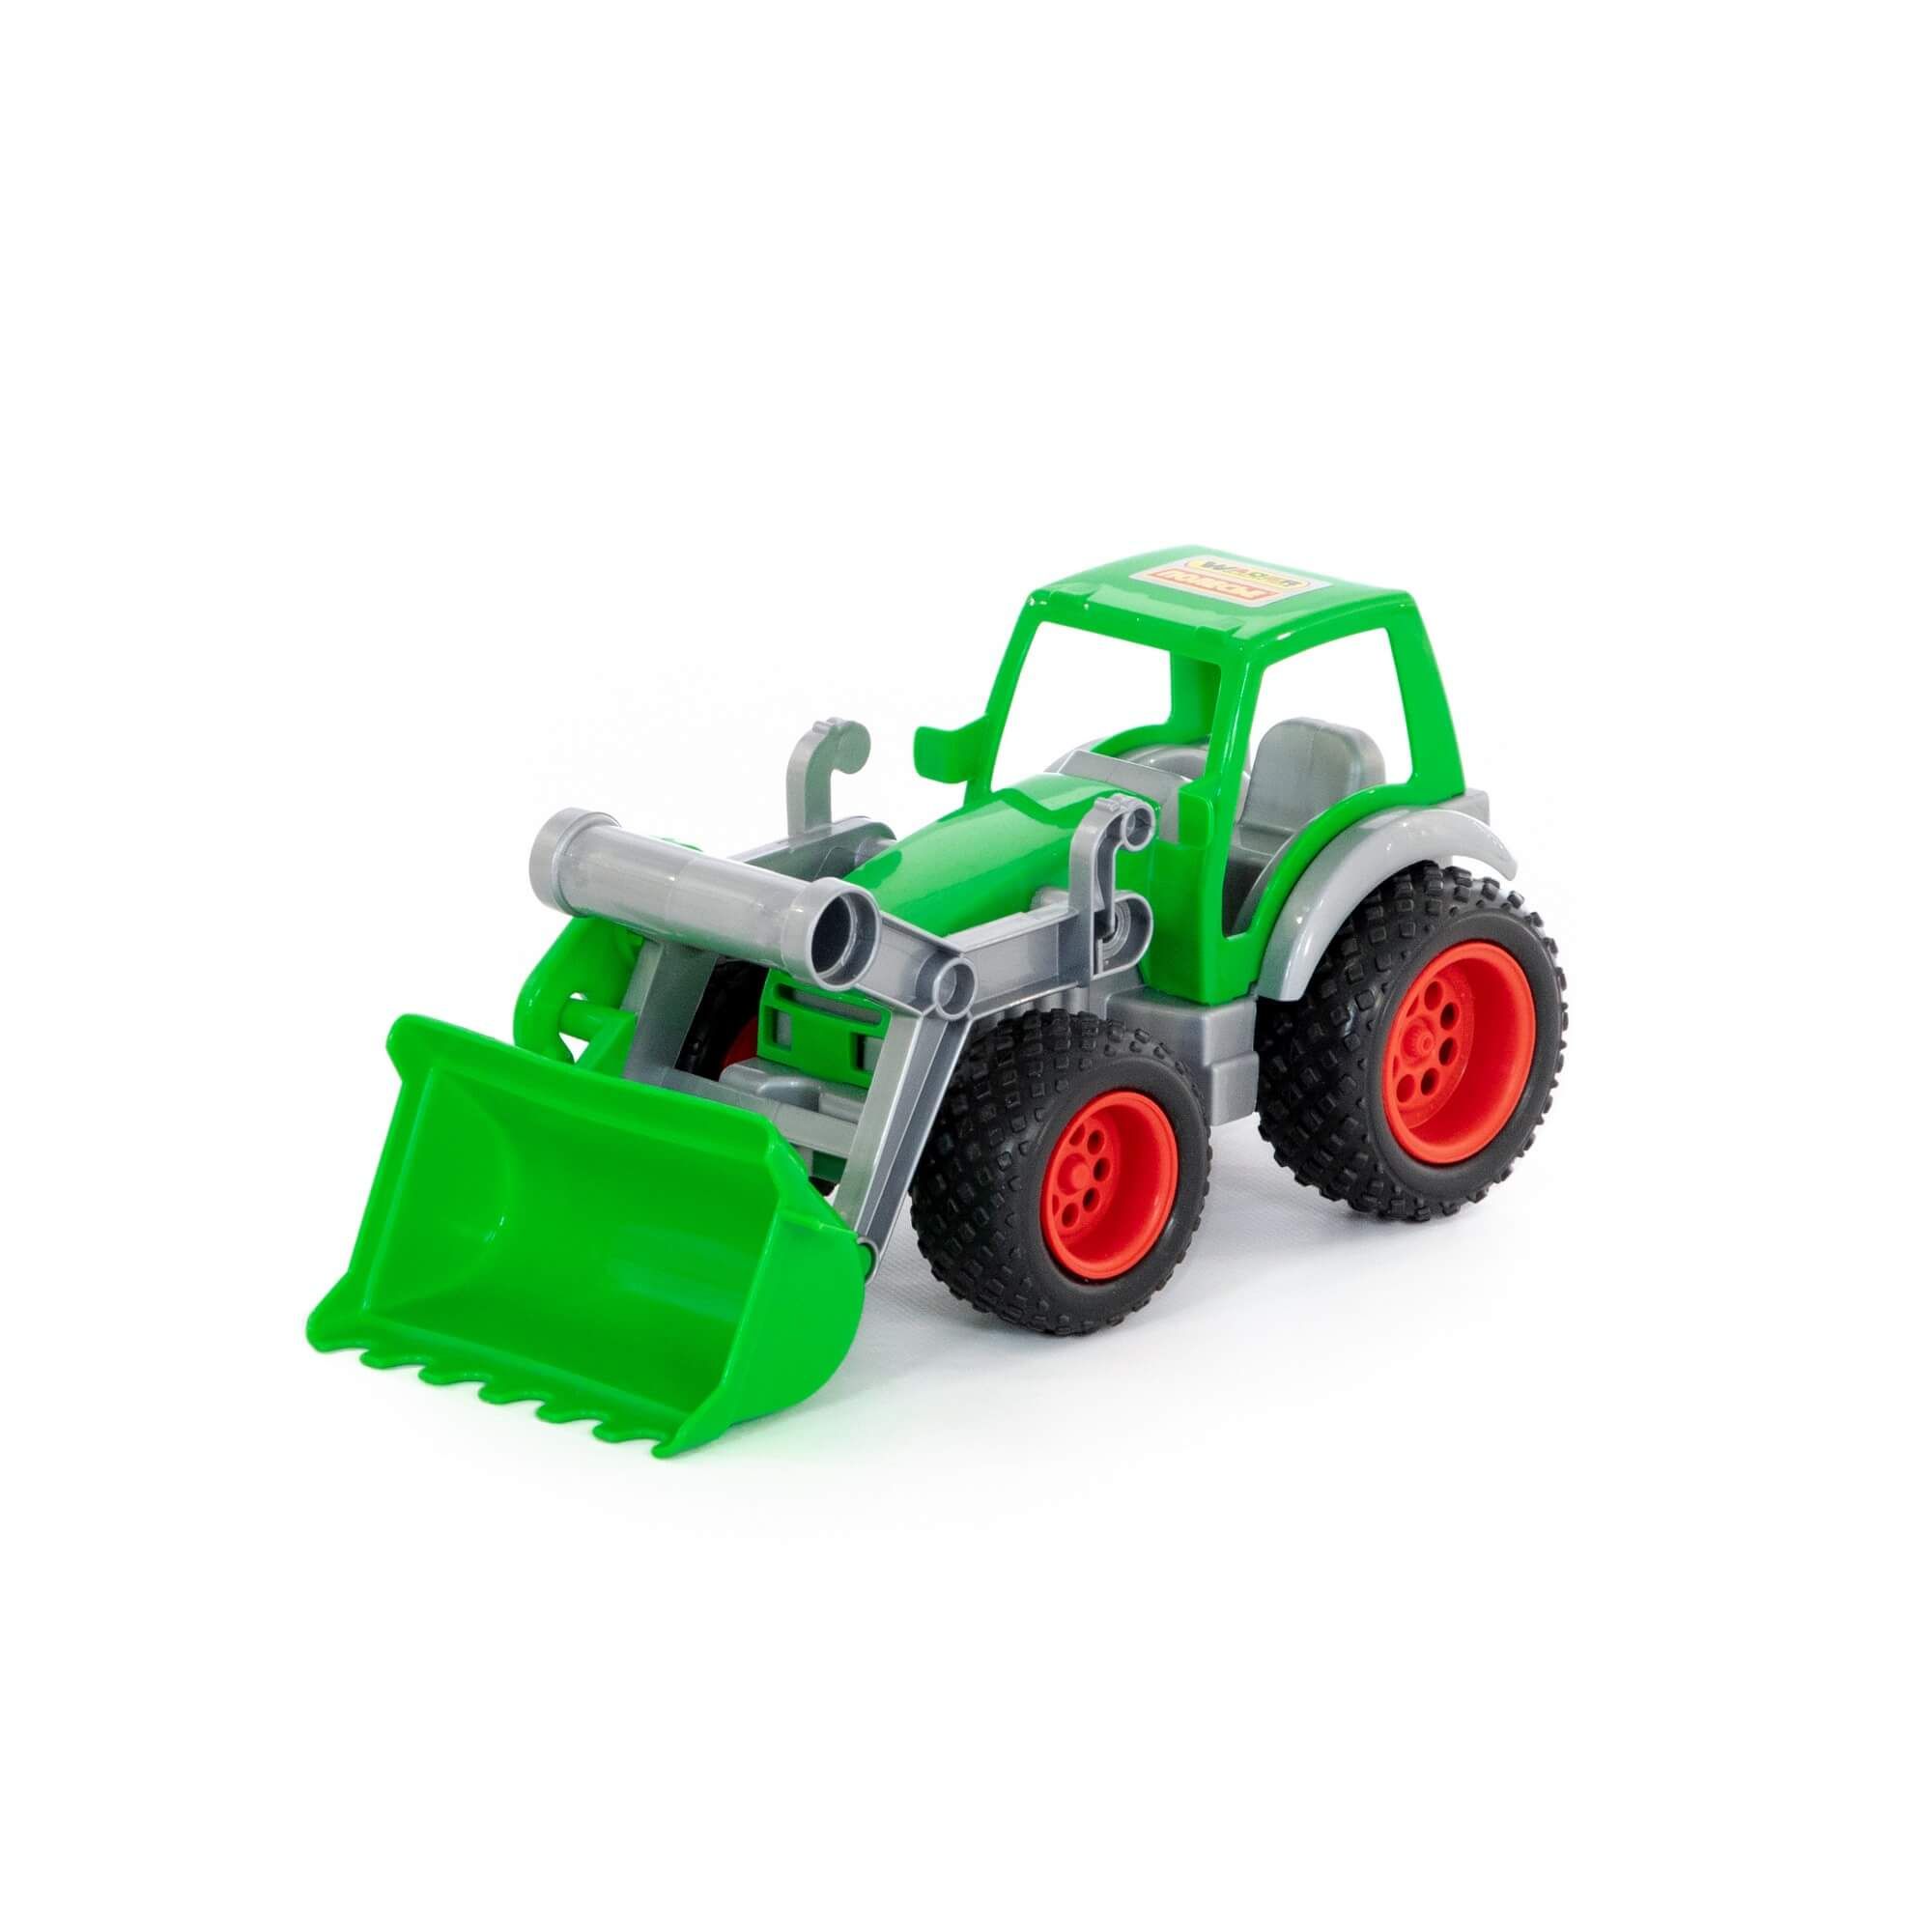 Трактор-погрузчик Фермер-техник (в сеточке) 8848 трактор погрузчик крепыш цвета микс